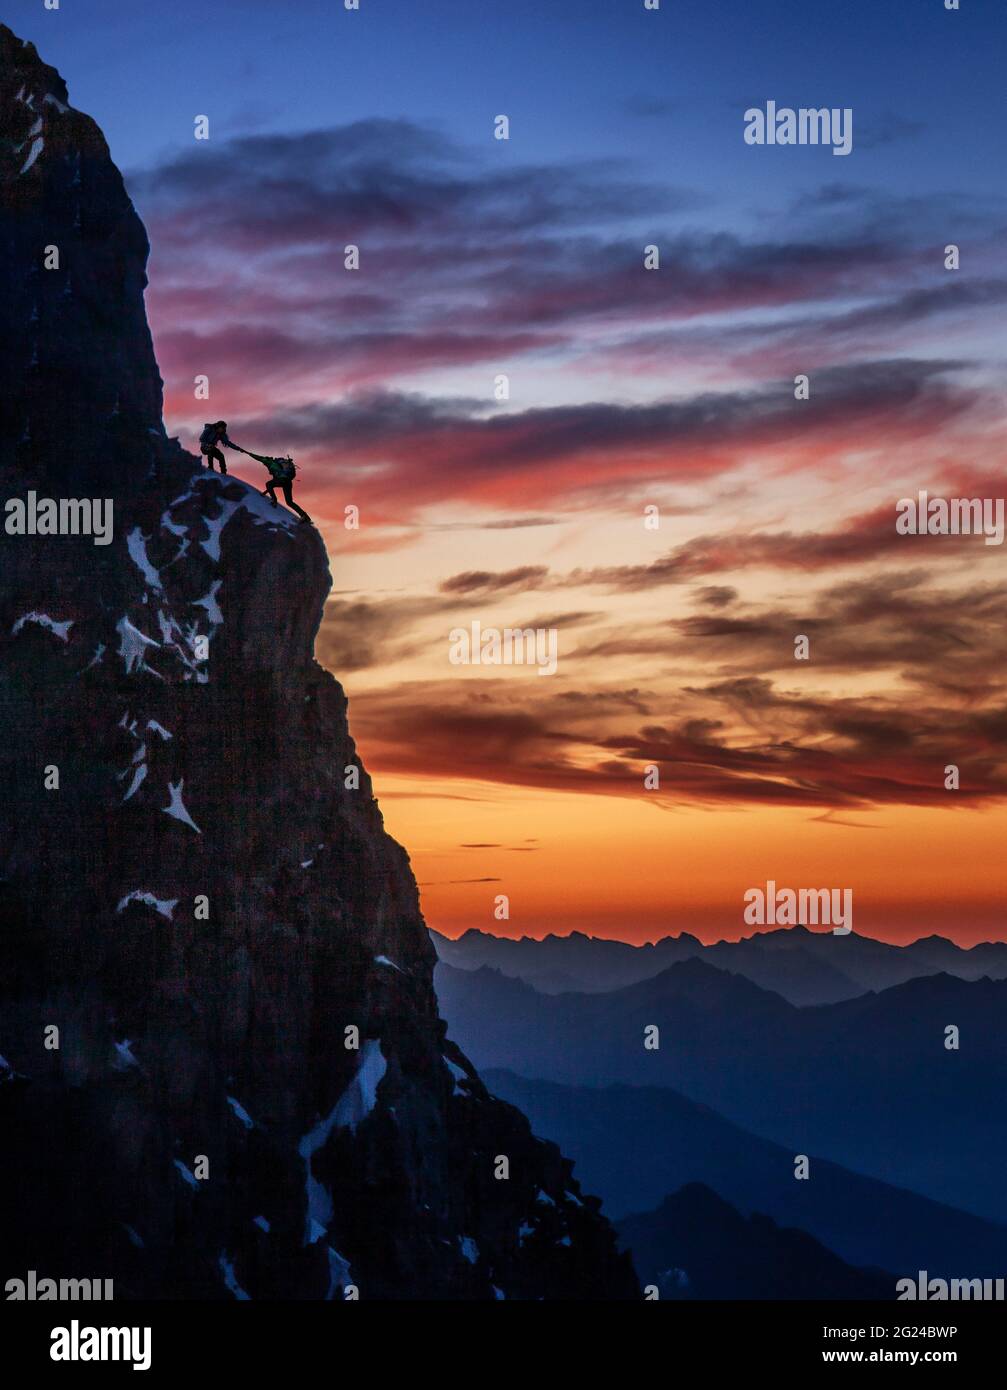 Francia, alta Savoia, Chamonix, silhouette di scalatori sul bordo roccioso del Monte Bianco al tramonto Foto Stock